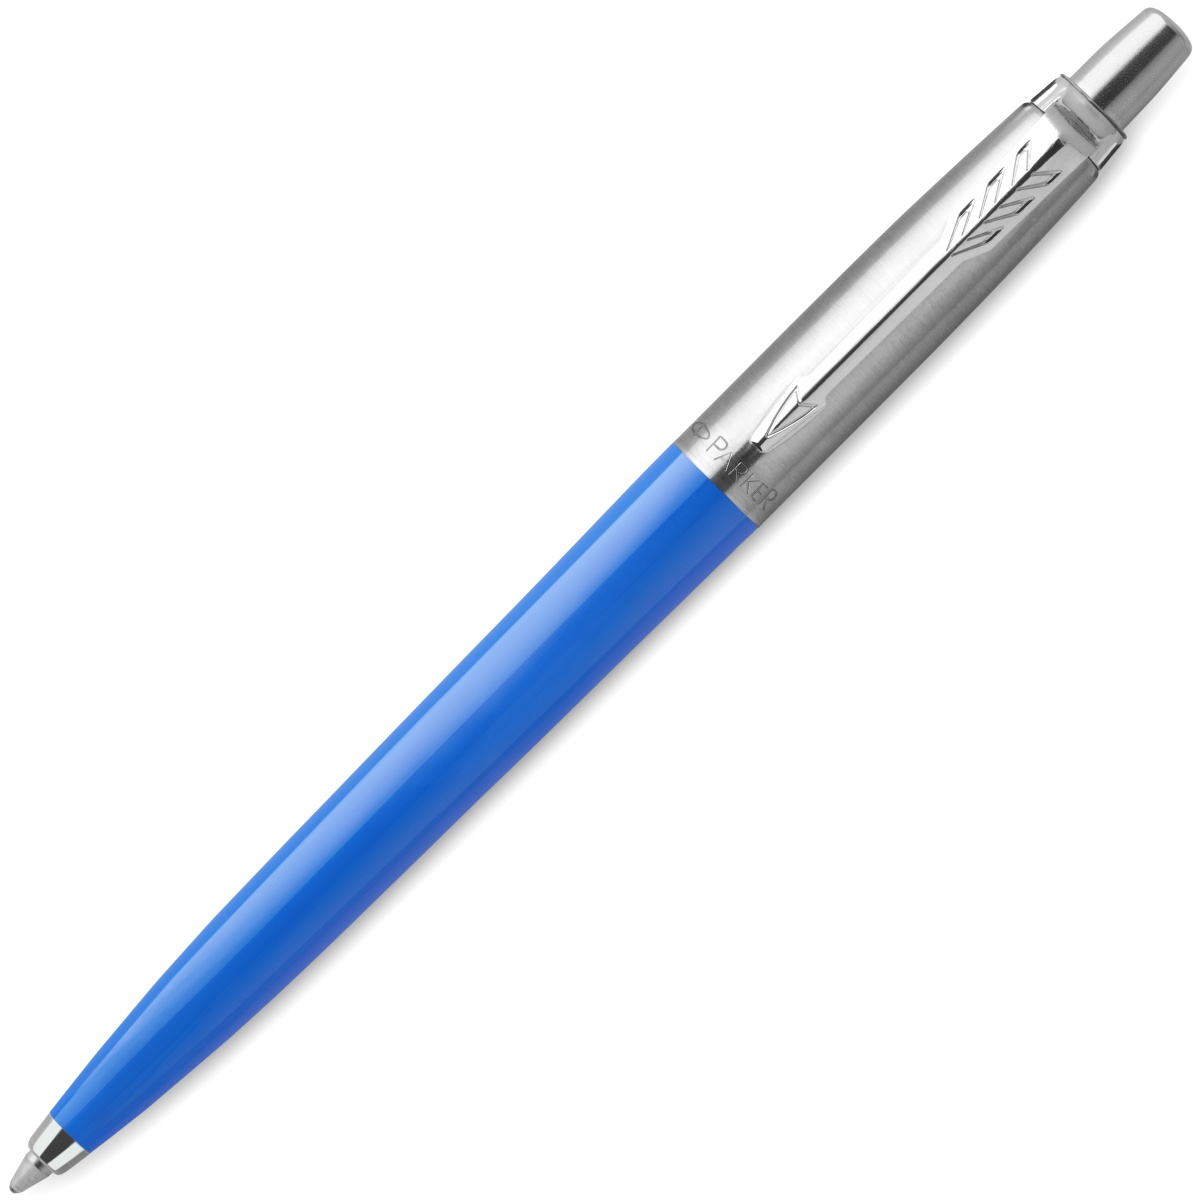  Набор: гелевая ручка Parker Jotter Original + синие гелевые стержни 5шт толщина линии (M - 0,7мм), блистер, фото 2